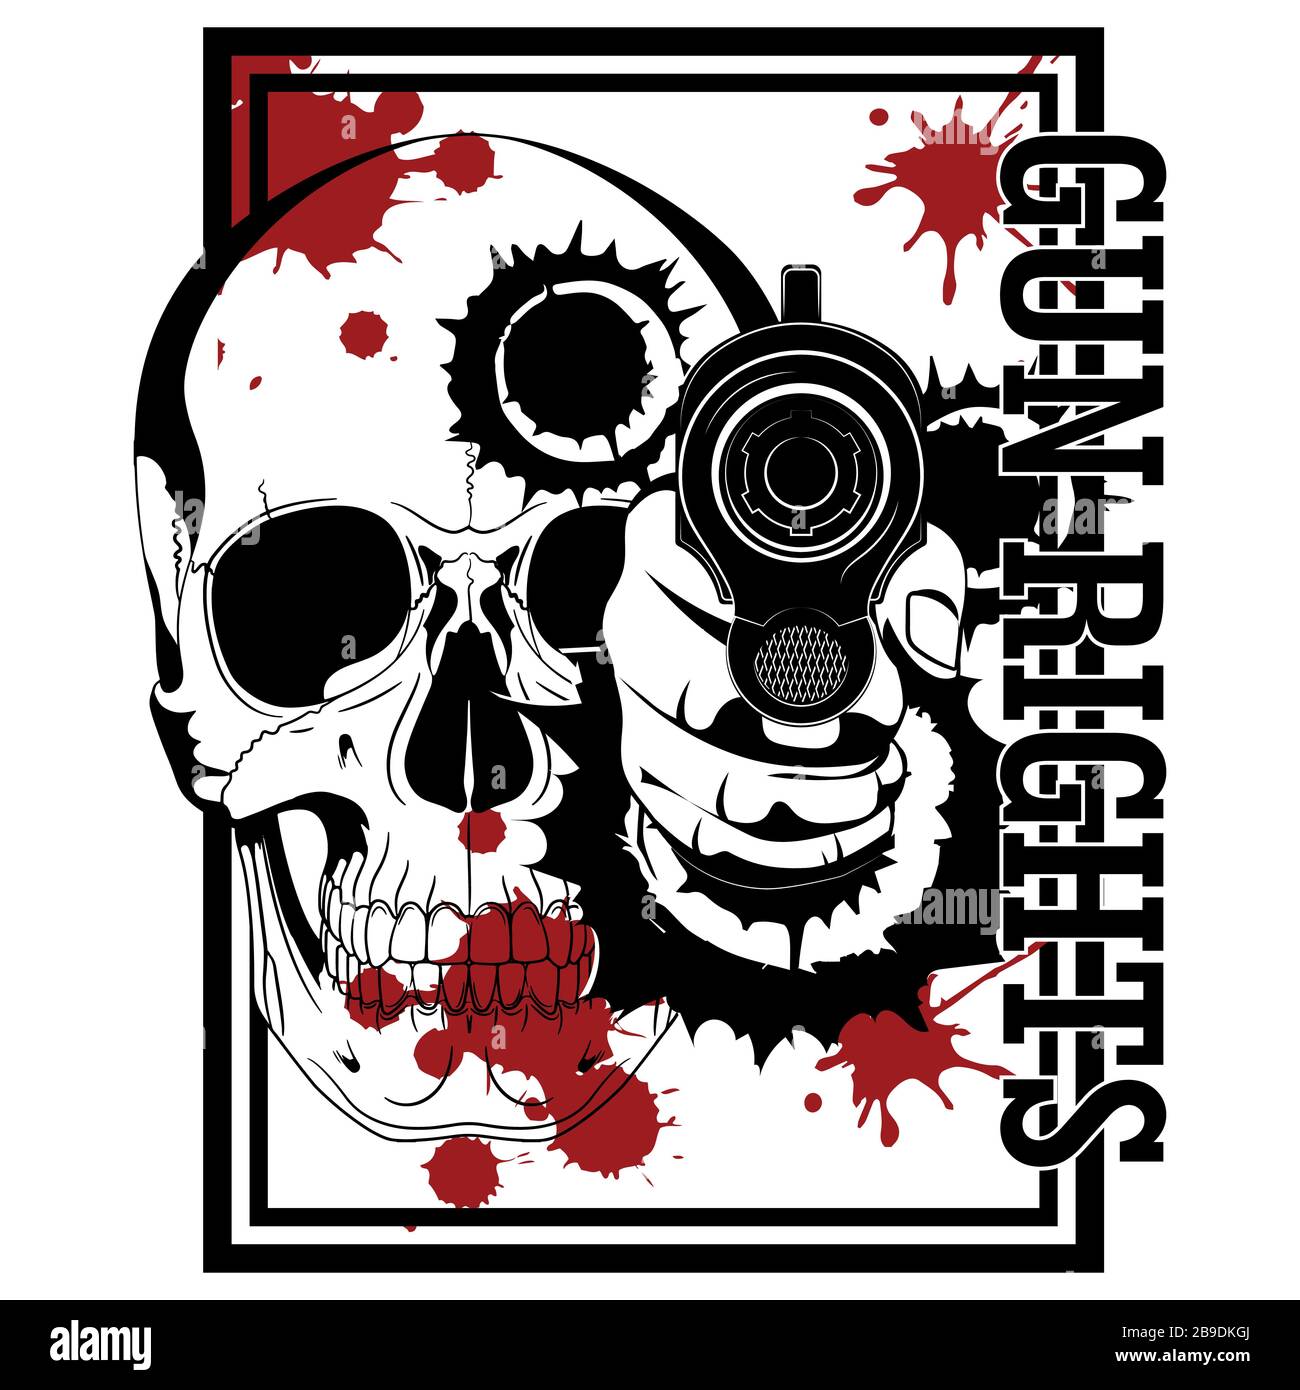 Conception avec armes à feu. Main avec canon, crâne humain, sang et bullet trous Illustration de Vecteur